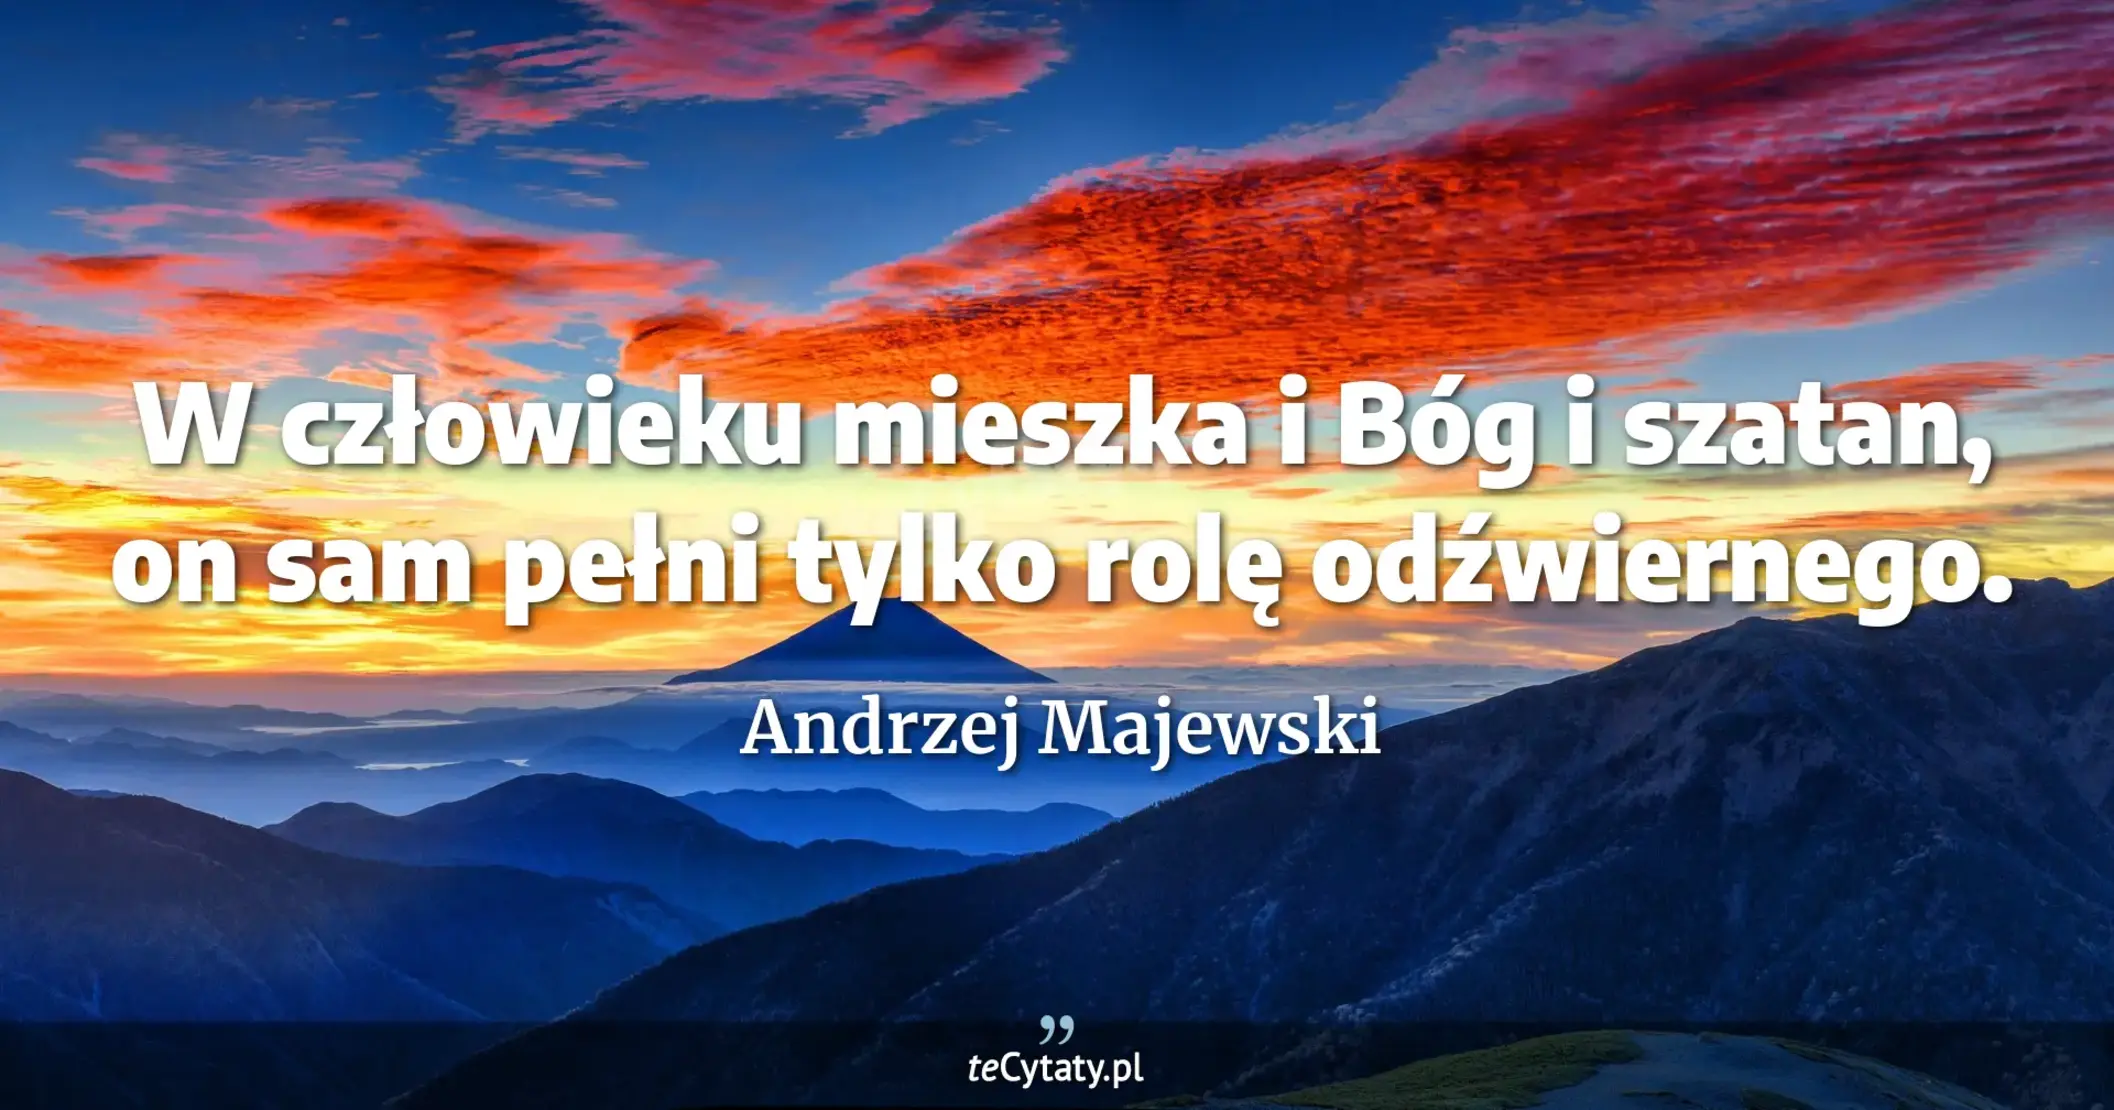 W człowieku mieszka i Bóg i szatan, on sam pełni tylko rolę odźwiernego. - Andrzej Majewski